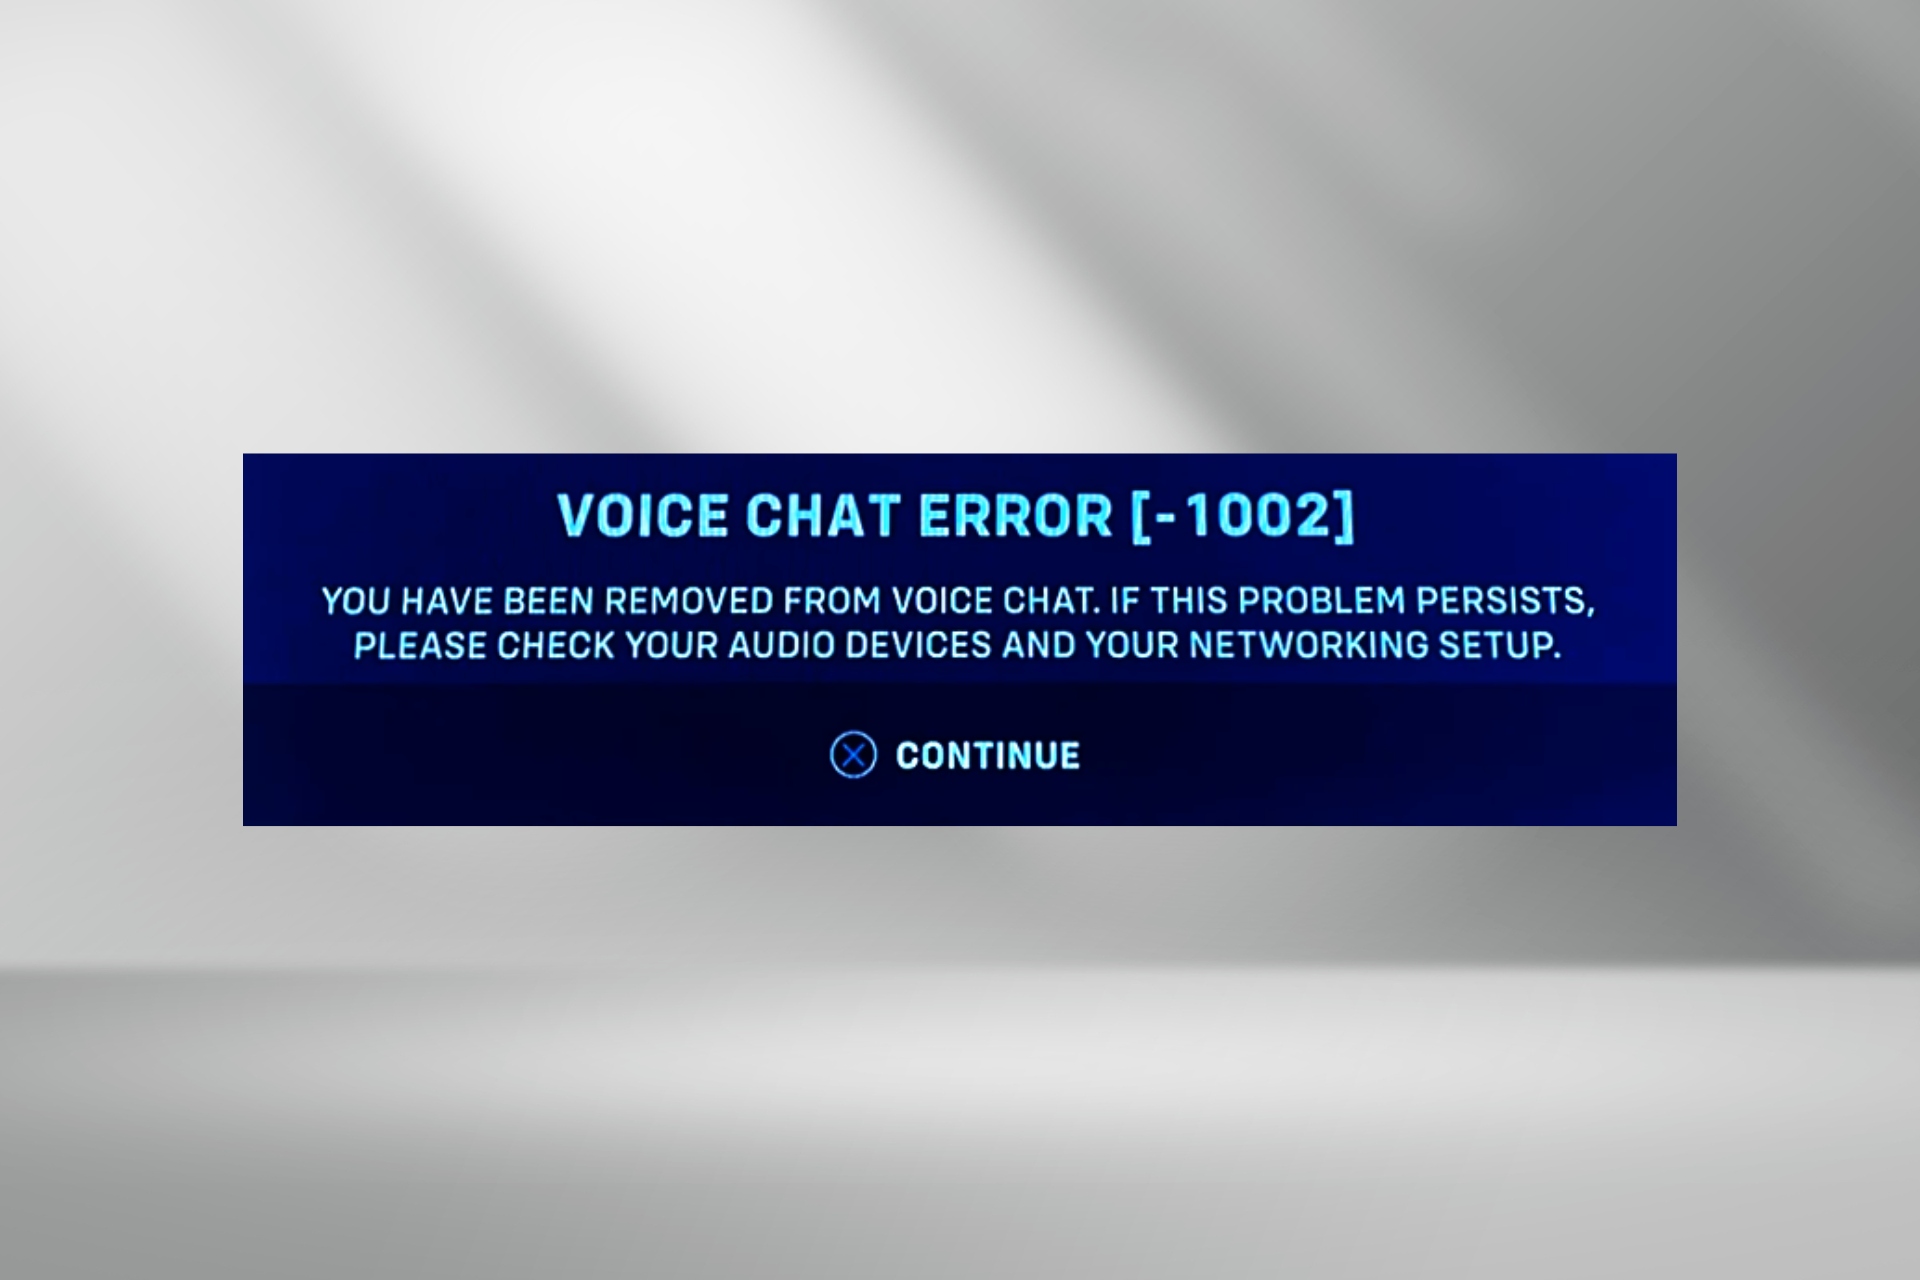 Fix voice chat error 1002 in overwatch